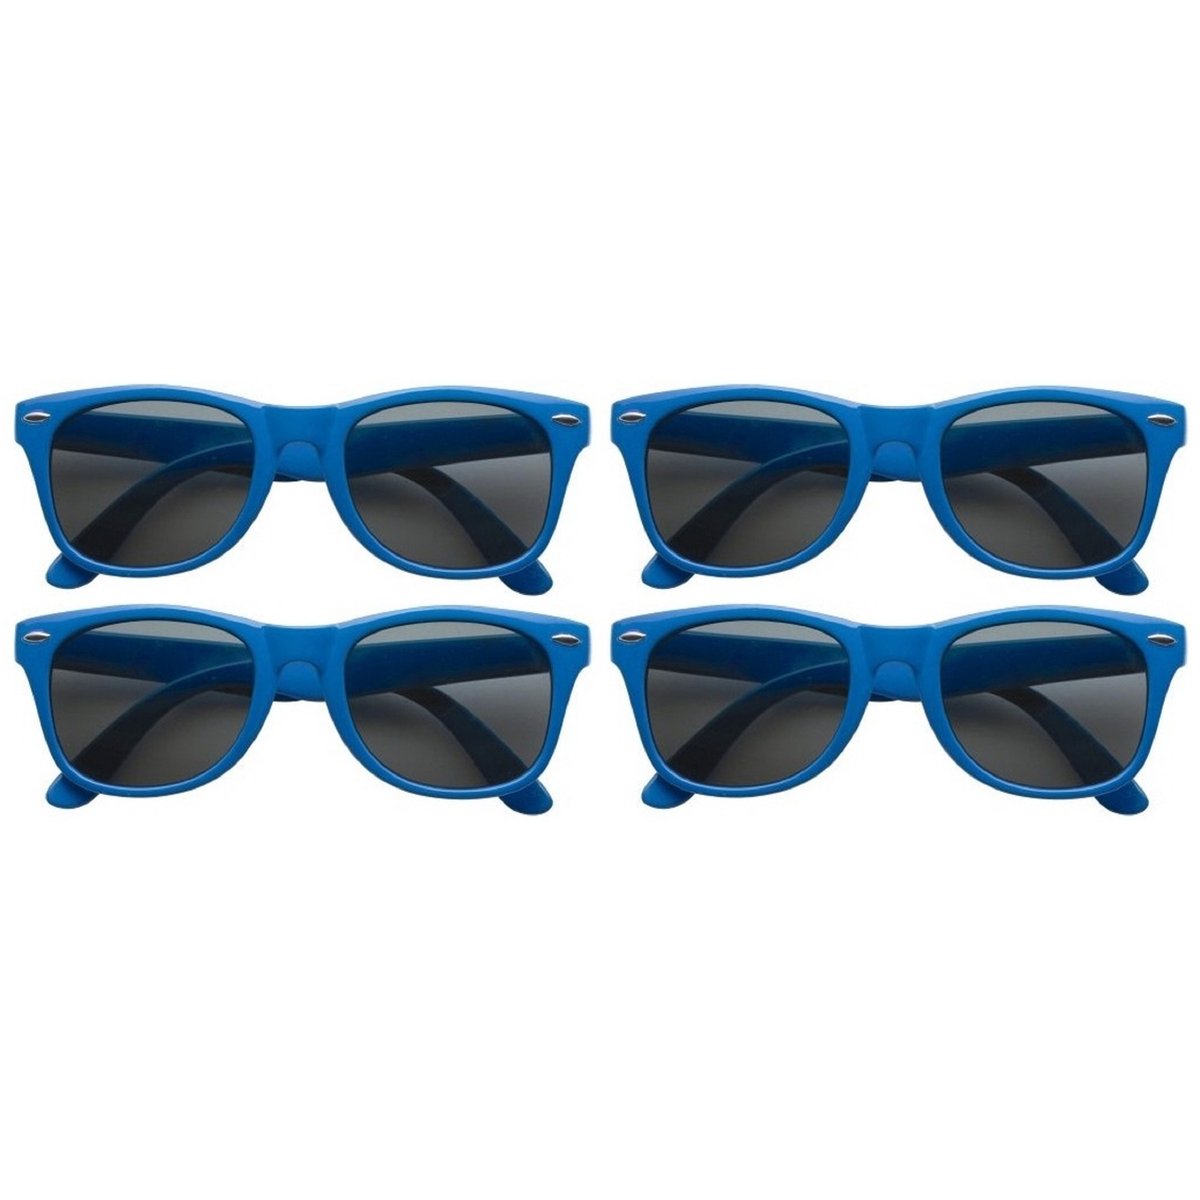 8x stuks zonnebril blauw - UV400 bescherming - Zonnebrillen voor dames/heren